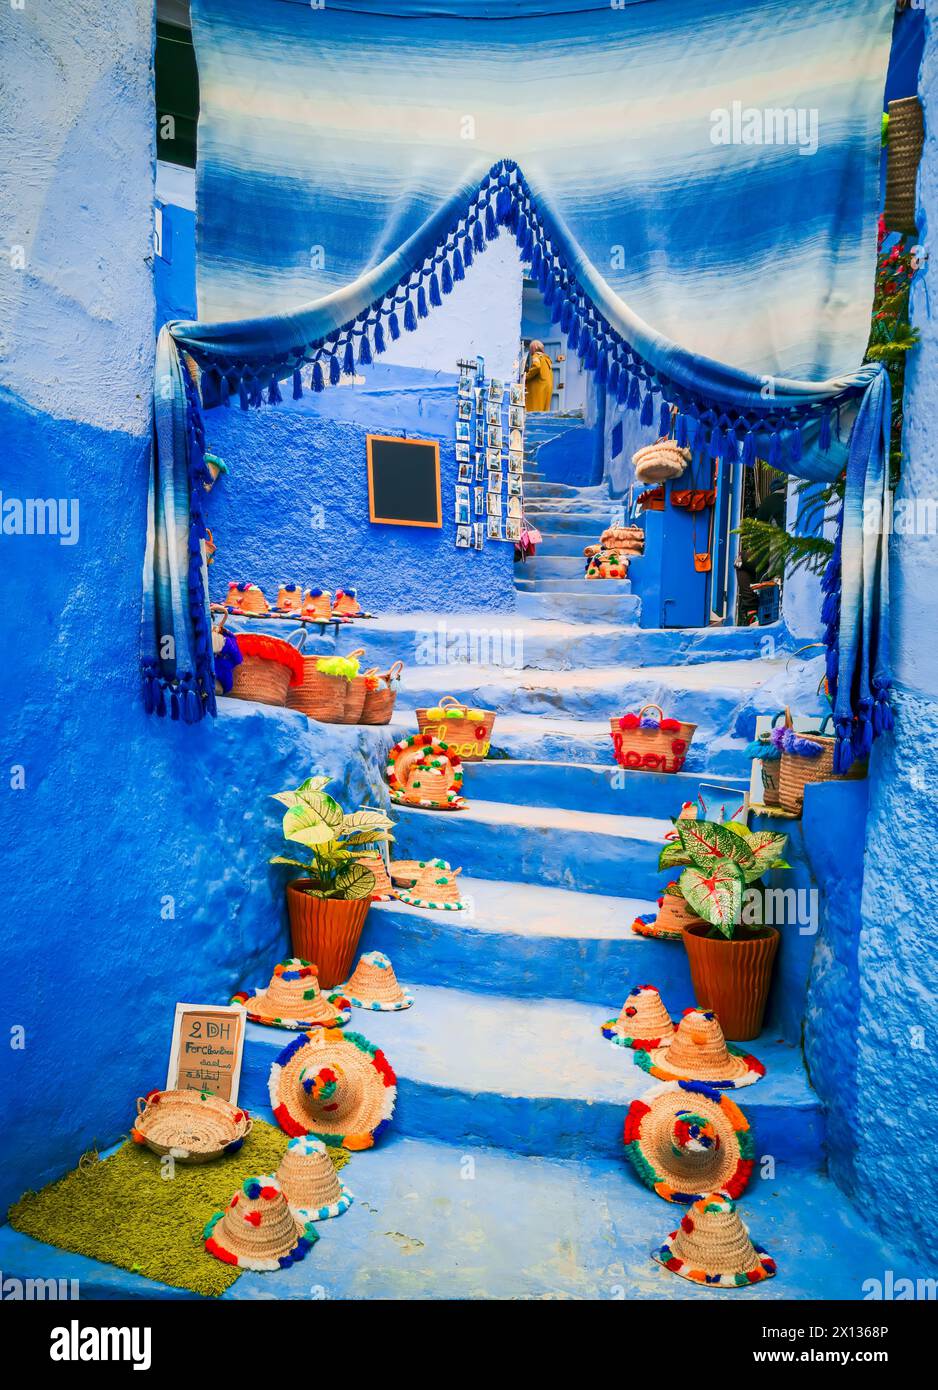 Chefchaouen, Marokko. Blaue Treppe und Wand mit farbenfrohen Blumentöpfen, Medina Chefchaouen, Reiseziel Nordafrika. Stockfoto